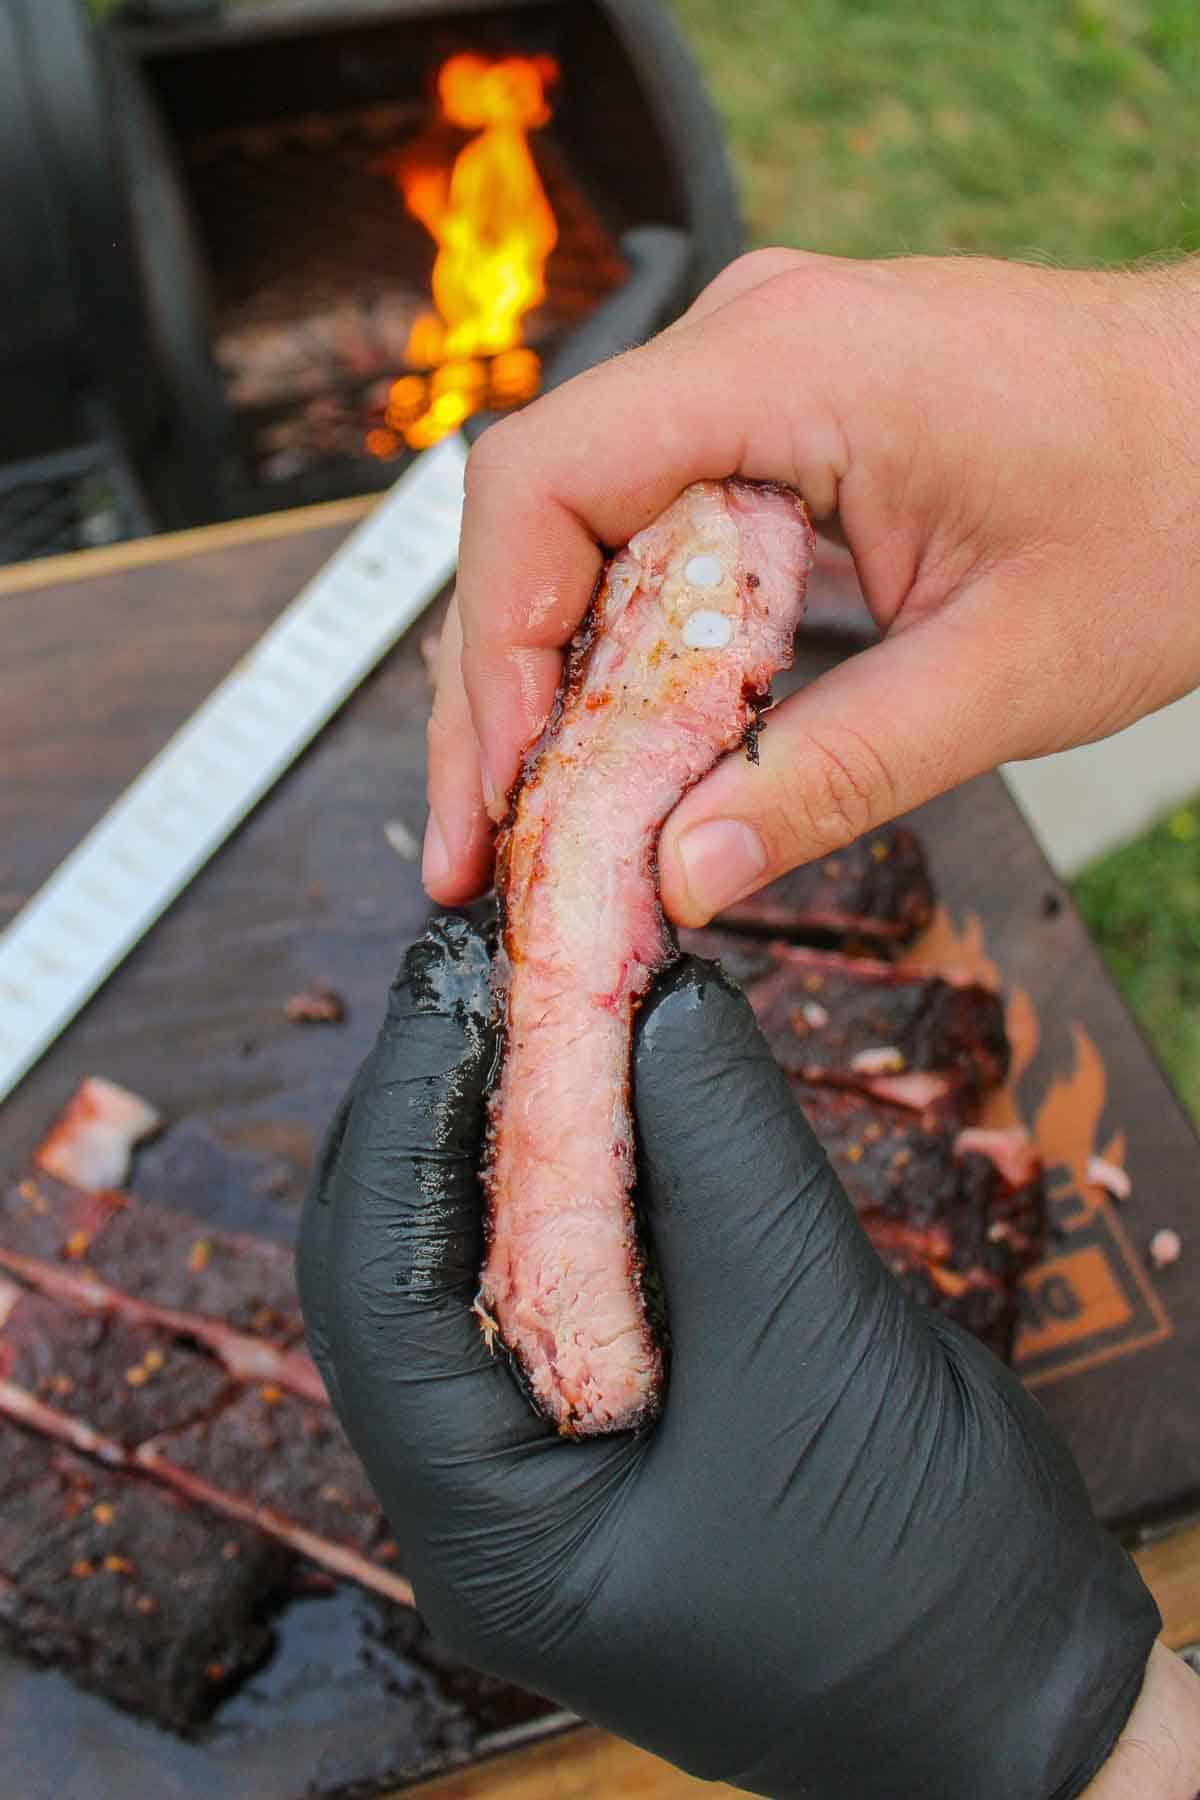 A close up shot of a sliced smoked rib.